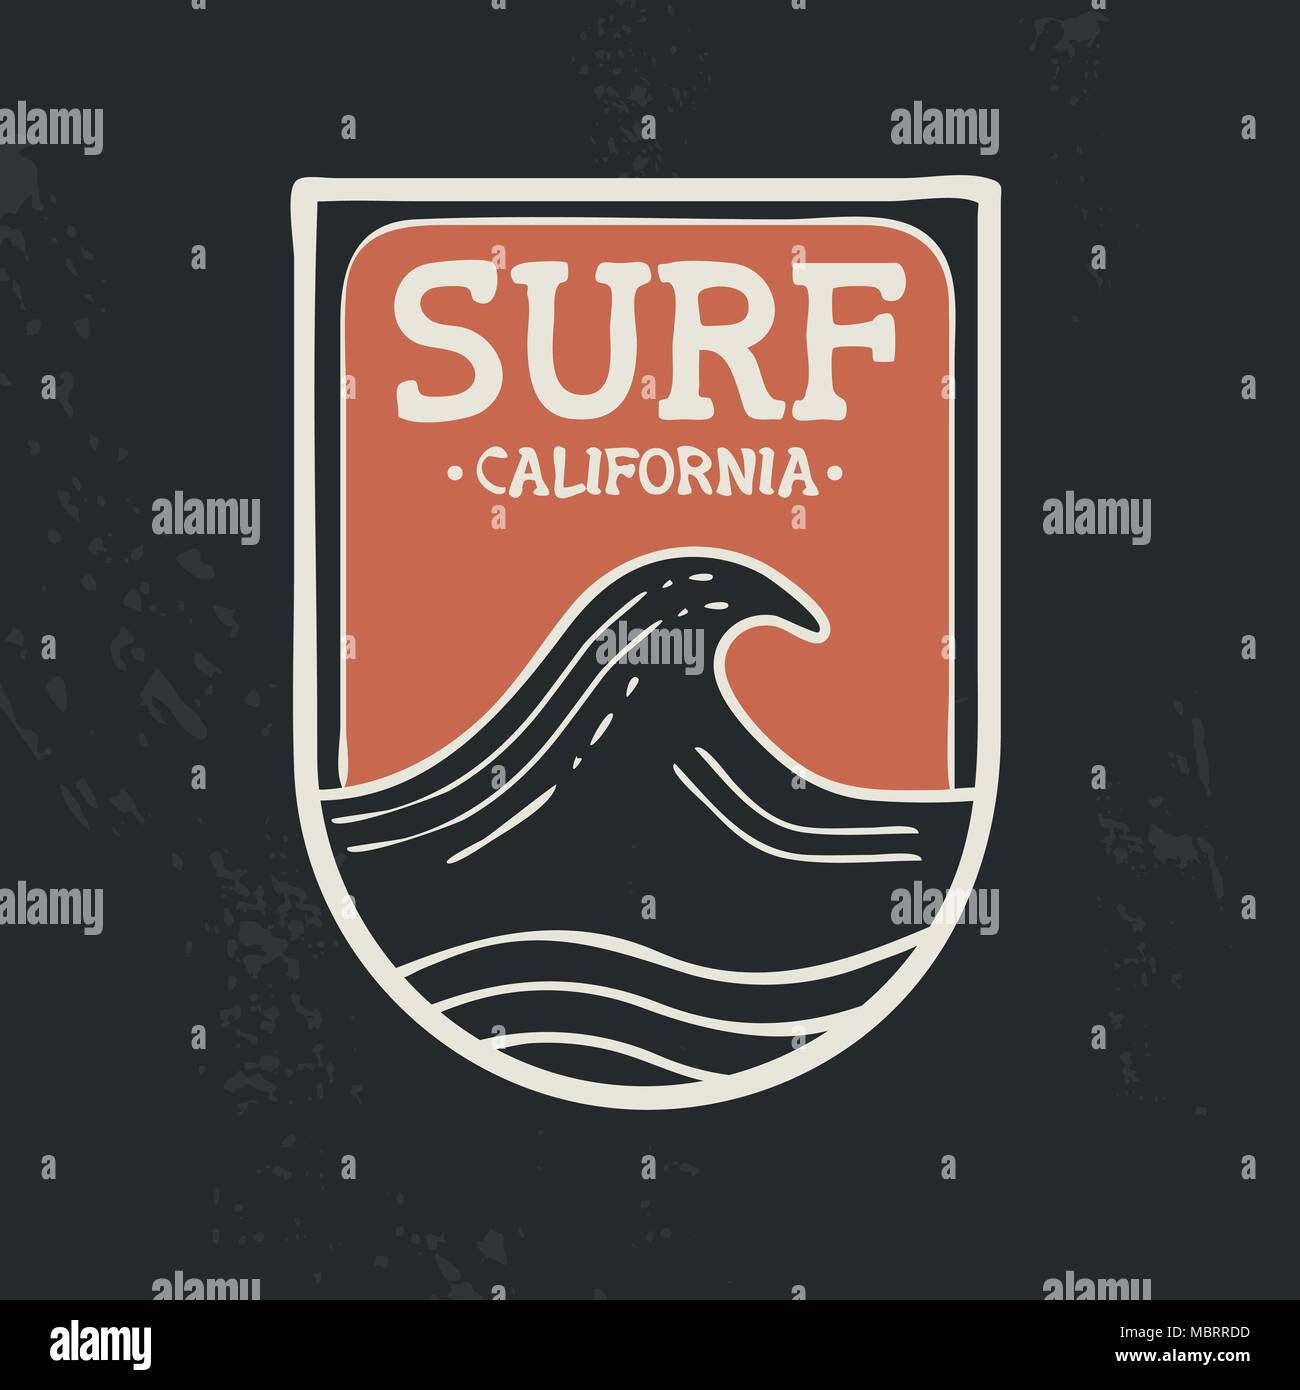 La plage de surf en Californie avec illustration timbre dessiné à la main, des vagues d'océan et de style grunge texture background. Idéal pour t shirt impression textile, de l'accueil Illustration de Vecteur